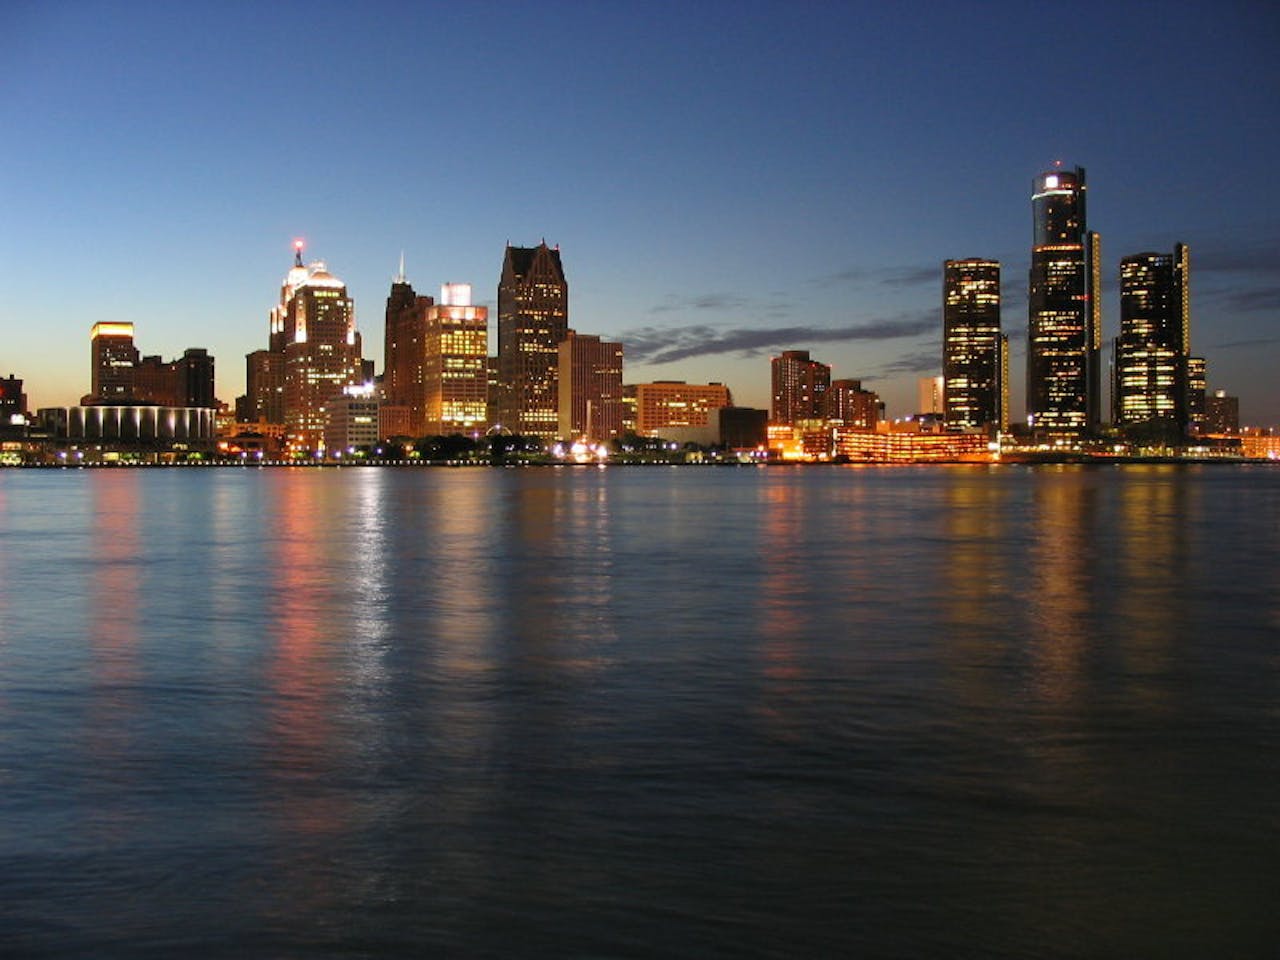 De skyline van Detroit in de schemering.